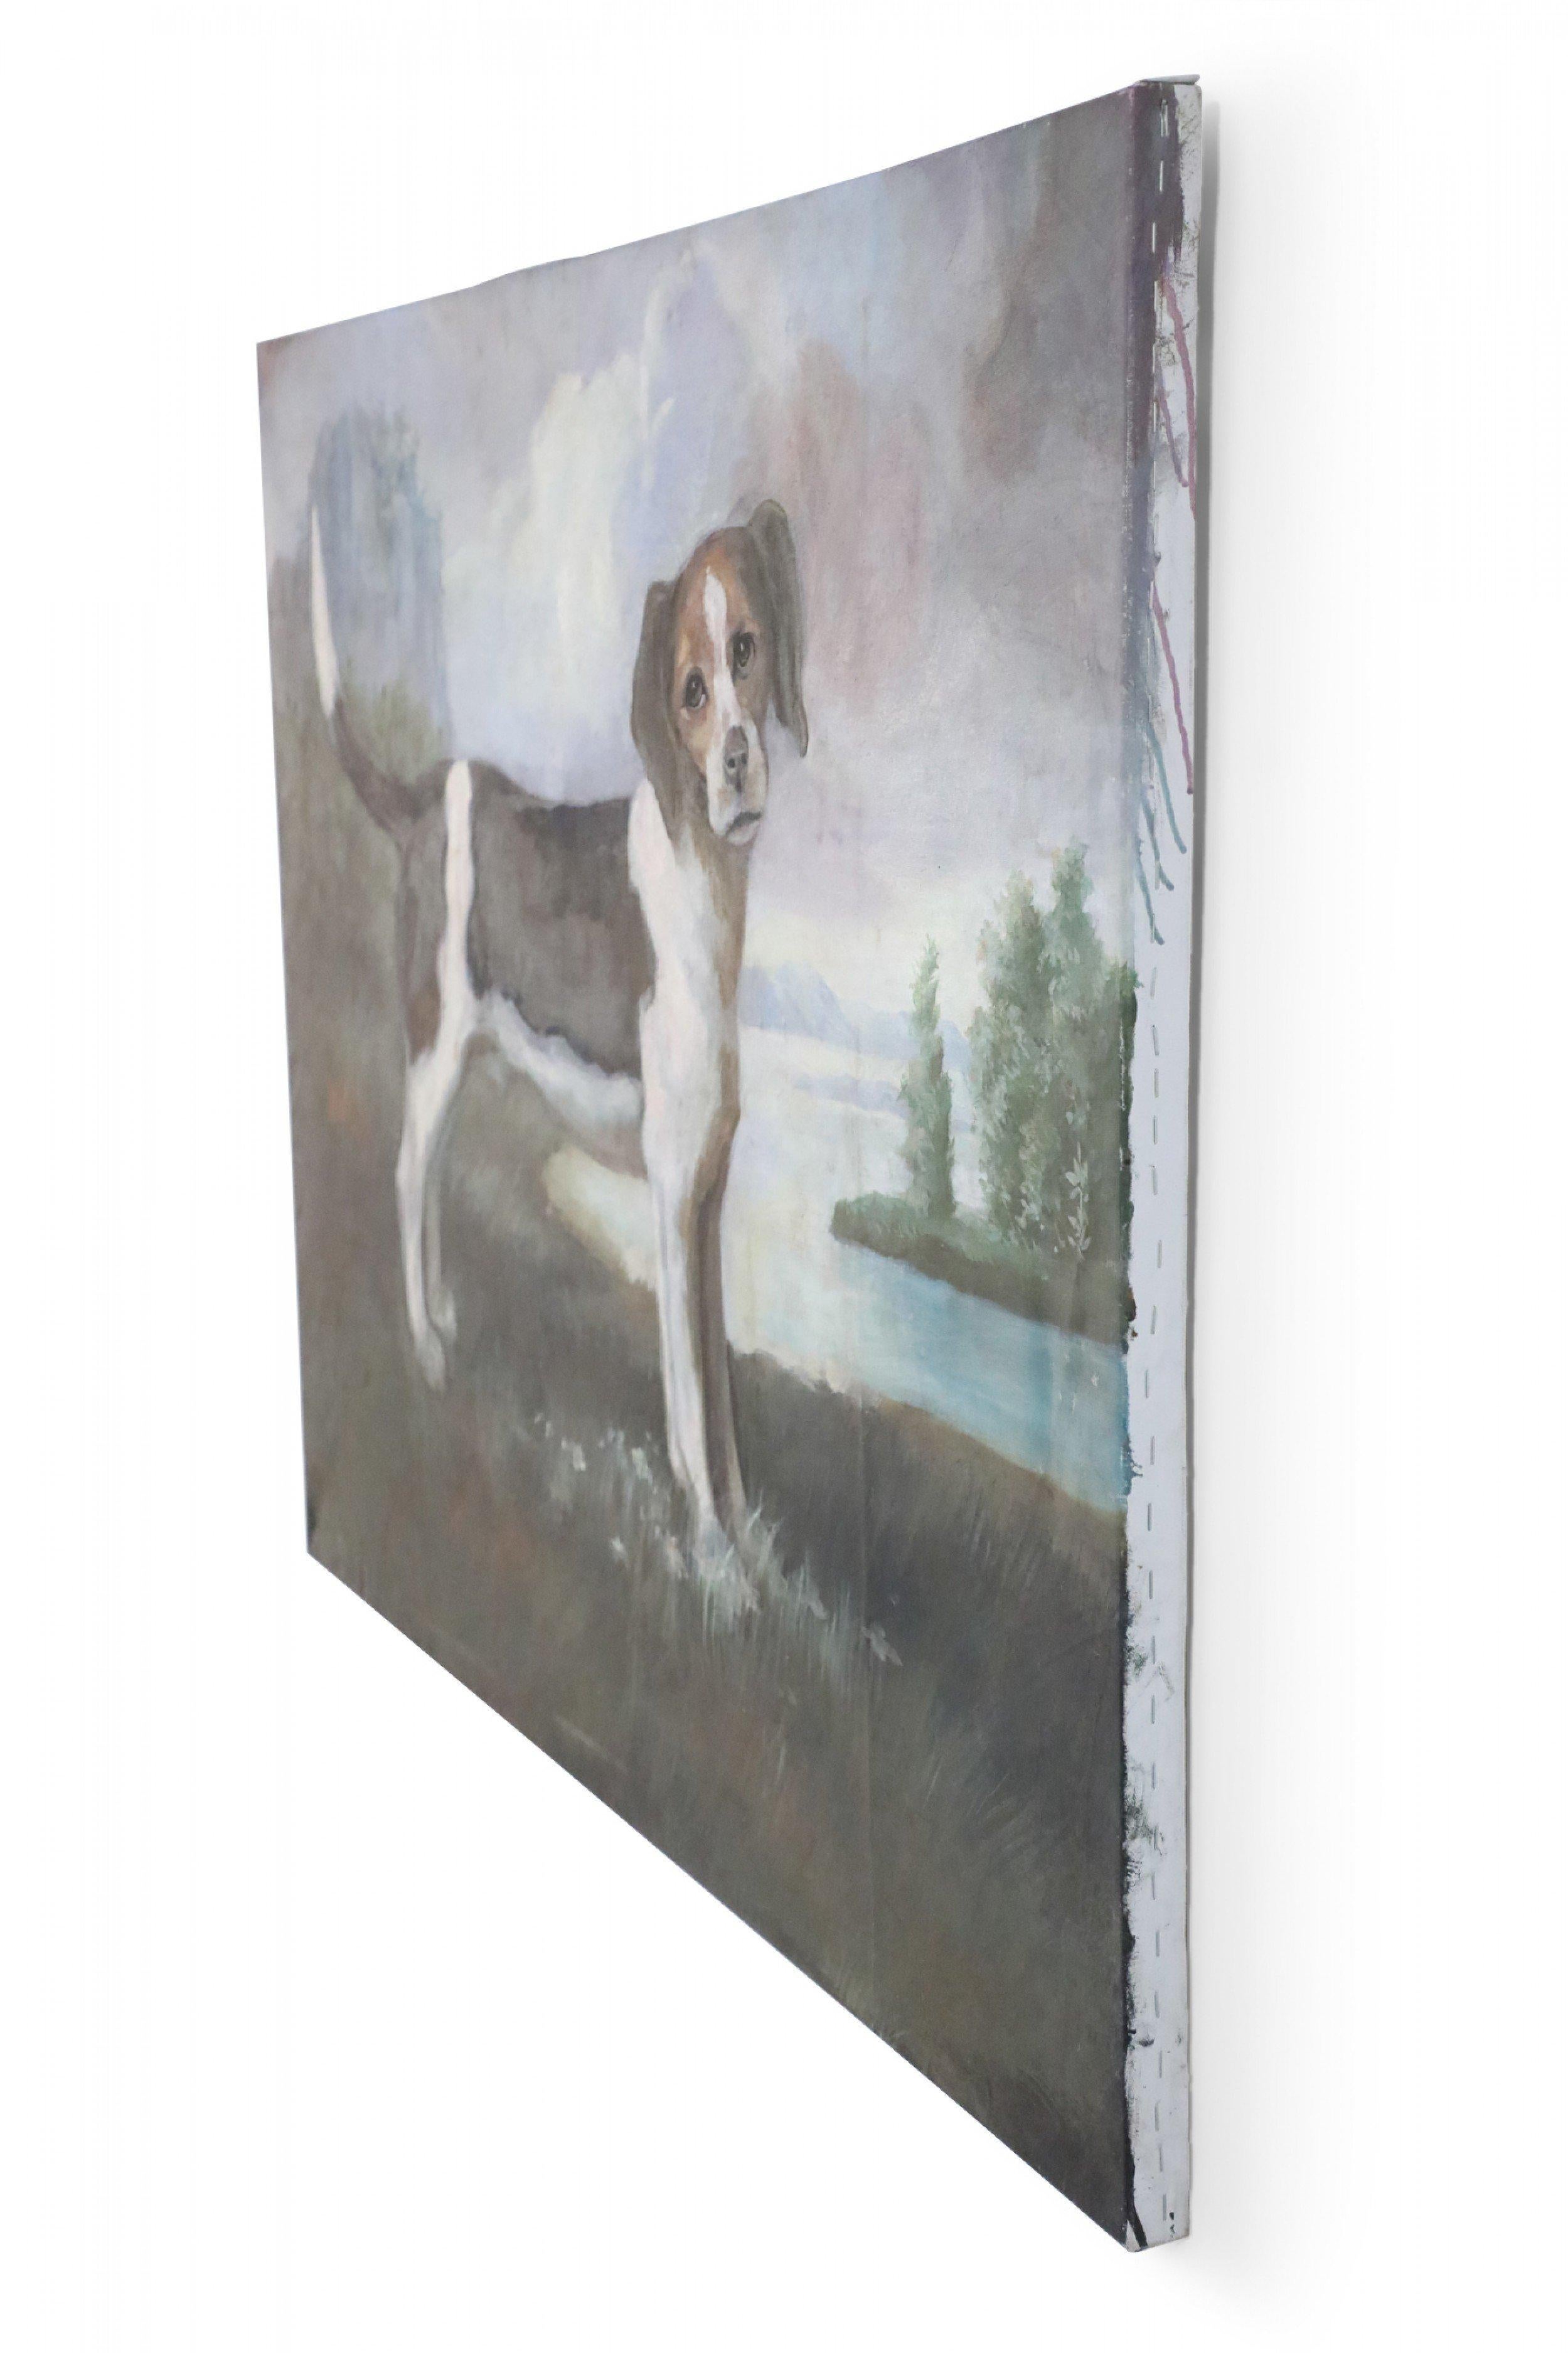 Grande peinture à l'huile sur toile non encadrée, d'époque (20e siècle), représentant un beagle noir, blanc et brun se tenant droit avec une légère inclinaison de la tête dans un champ d'herbe, avec une rivière, une forêt et une montagne servant